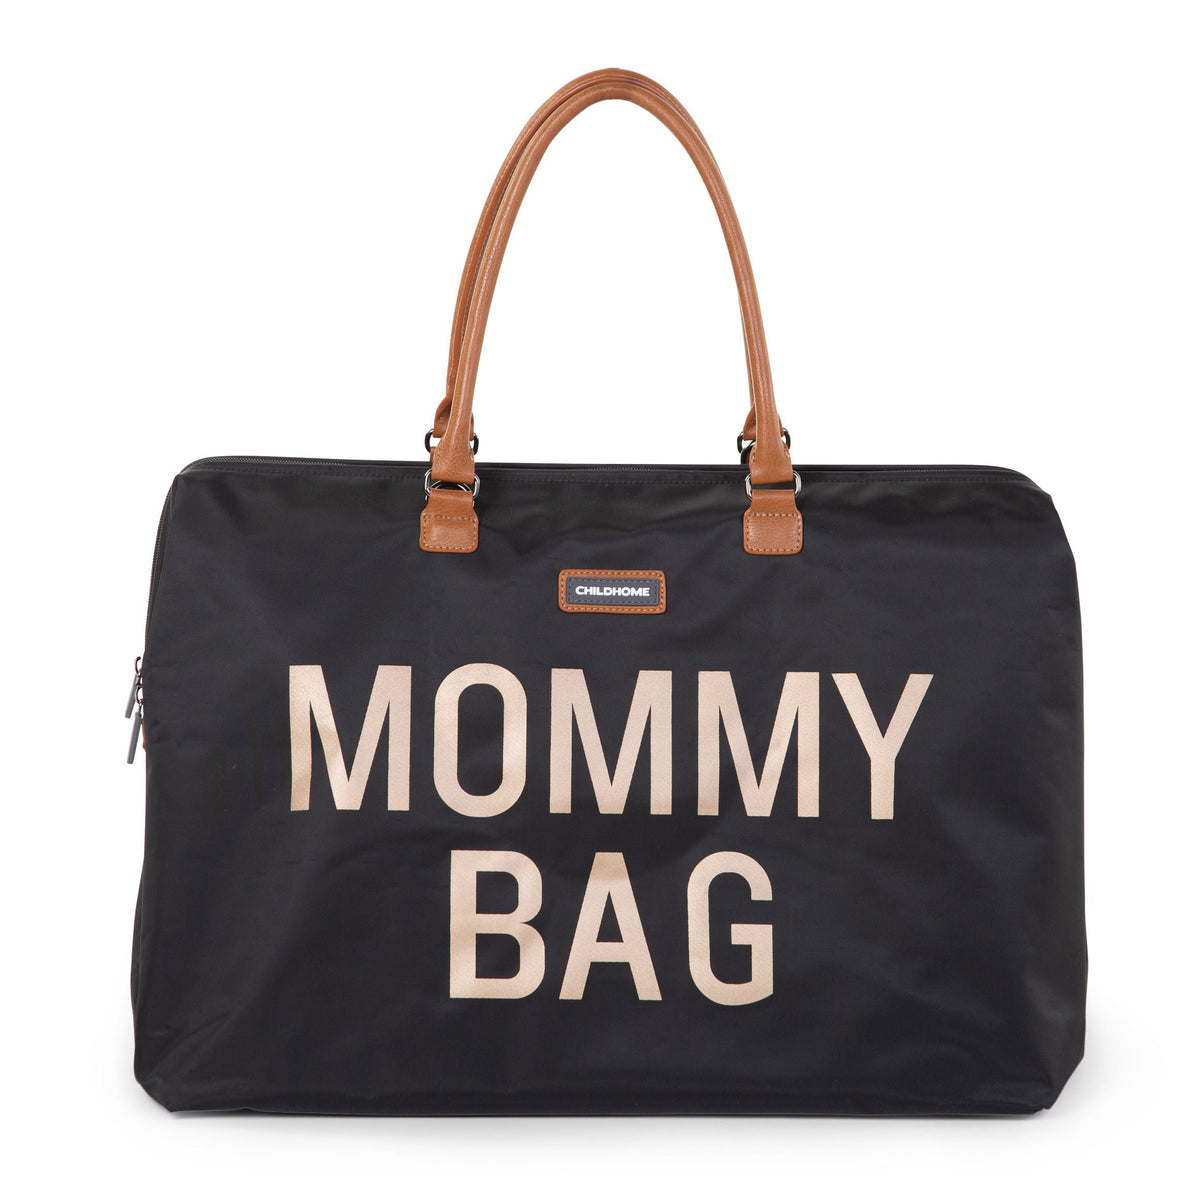 Childhome Mommy Bag Nursery Bag Black Gold